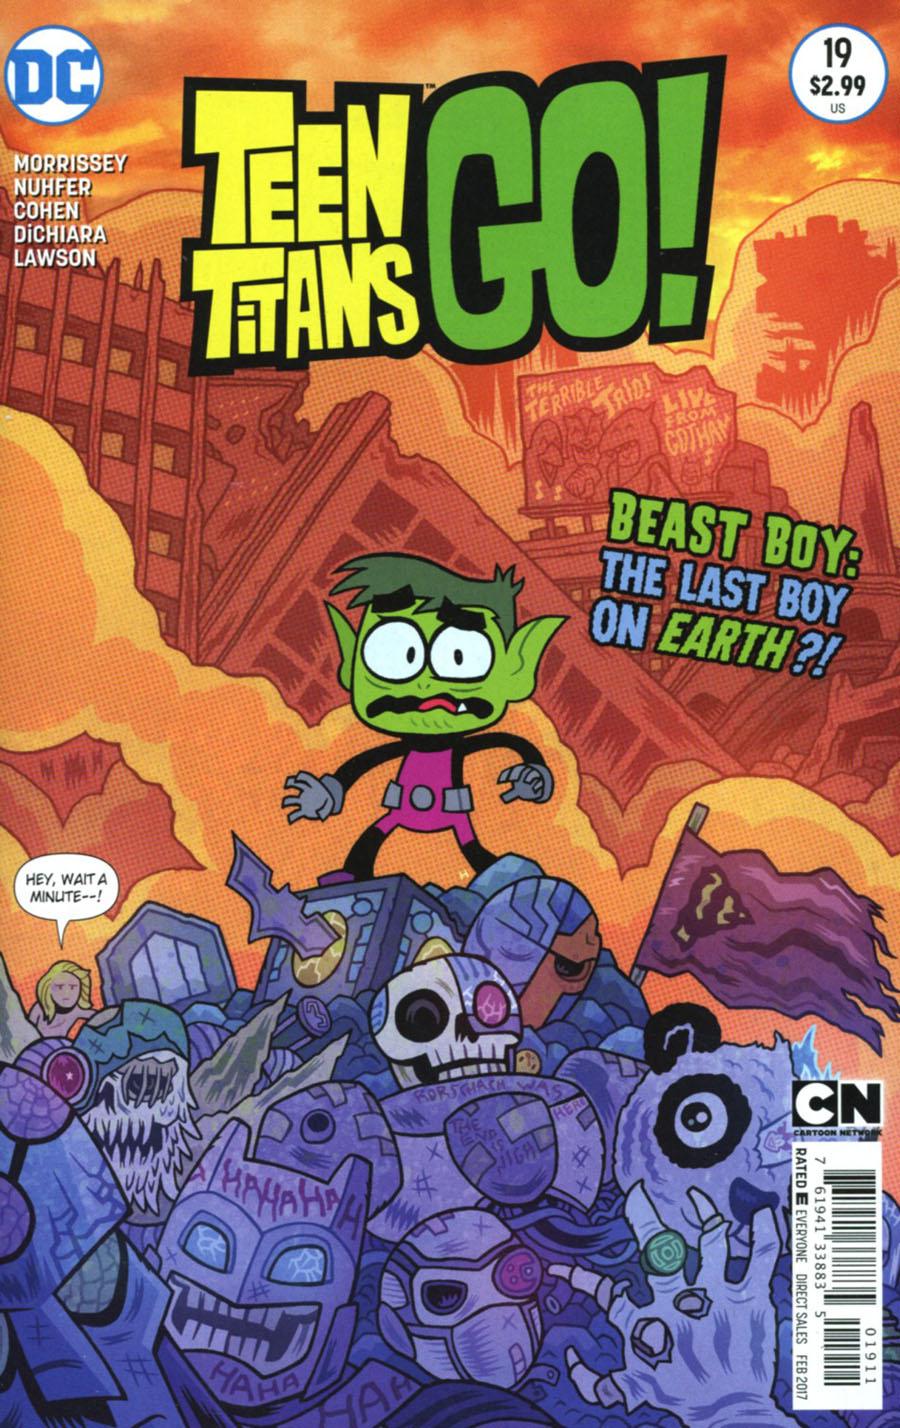 Teen Titans Go Vol. 2 #19